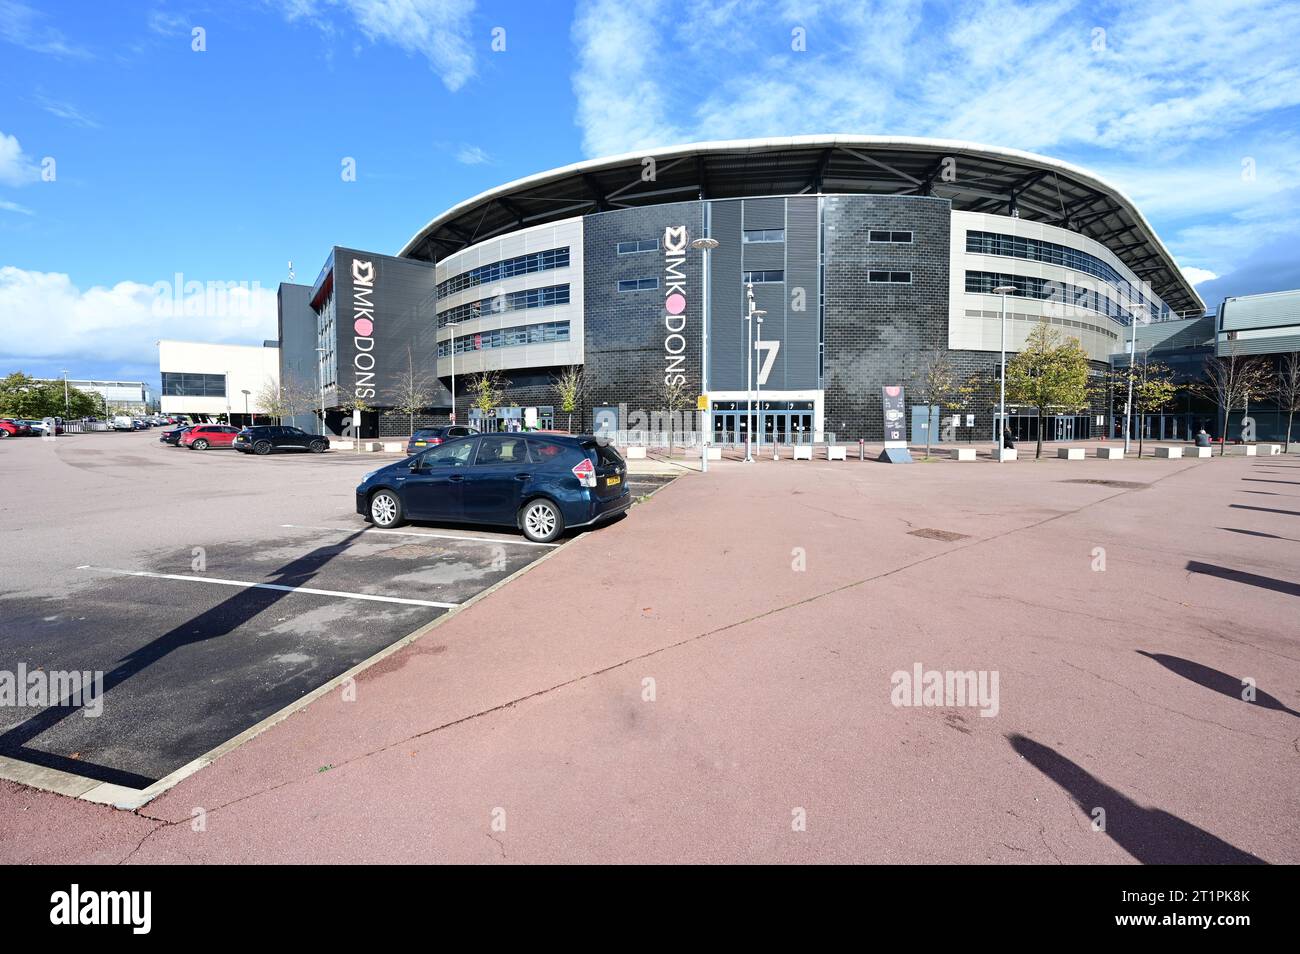 MK Dons Un estadio de fútbol inglés. Foto de stock